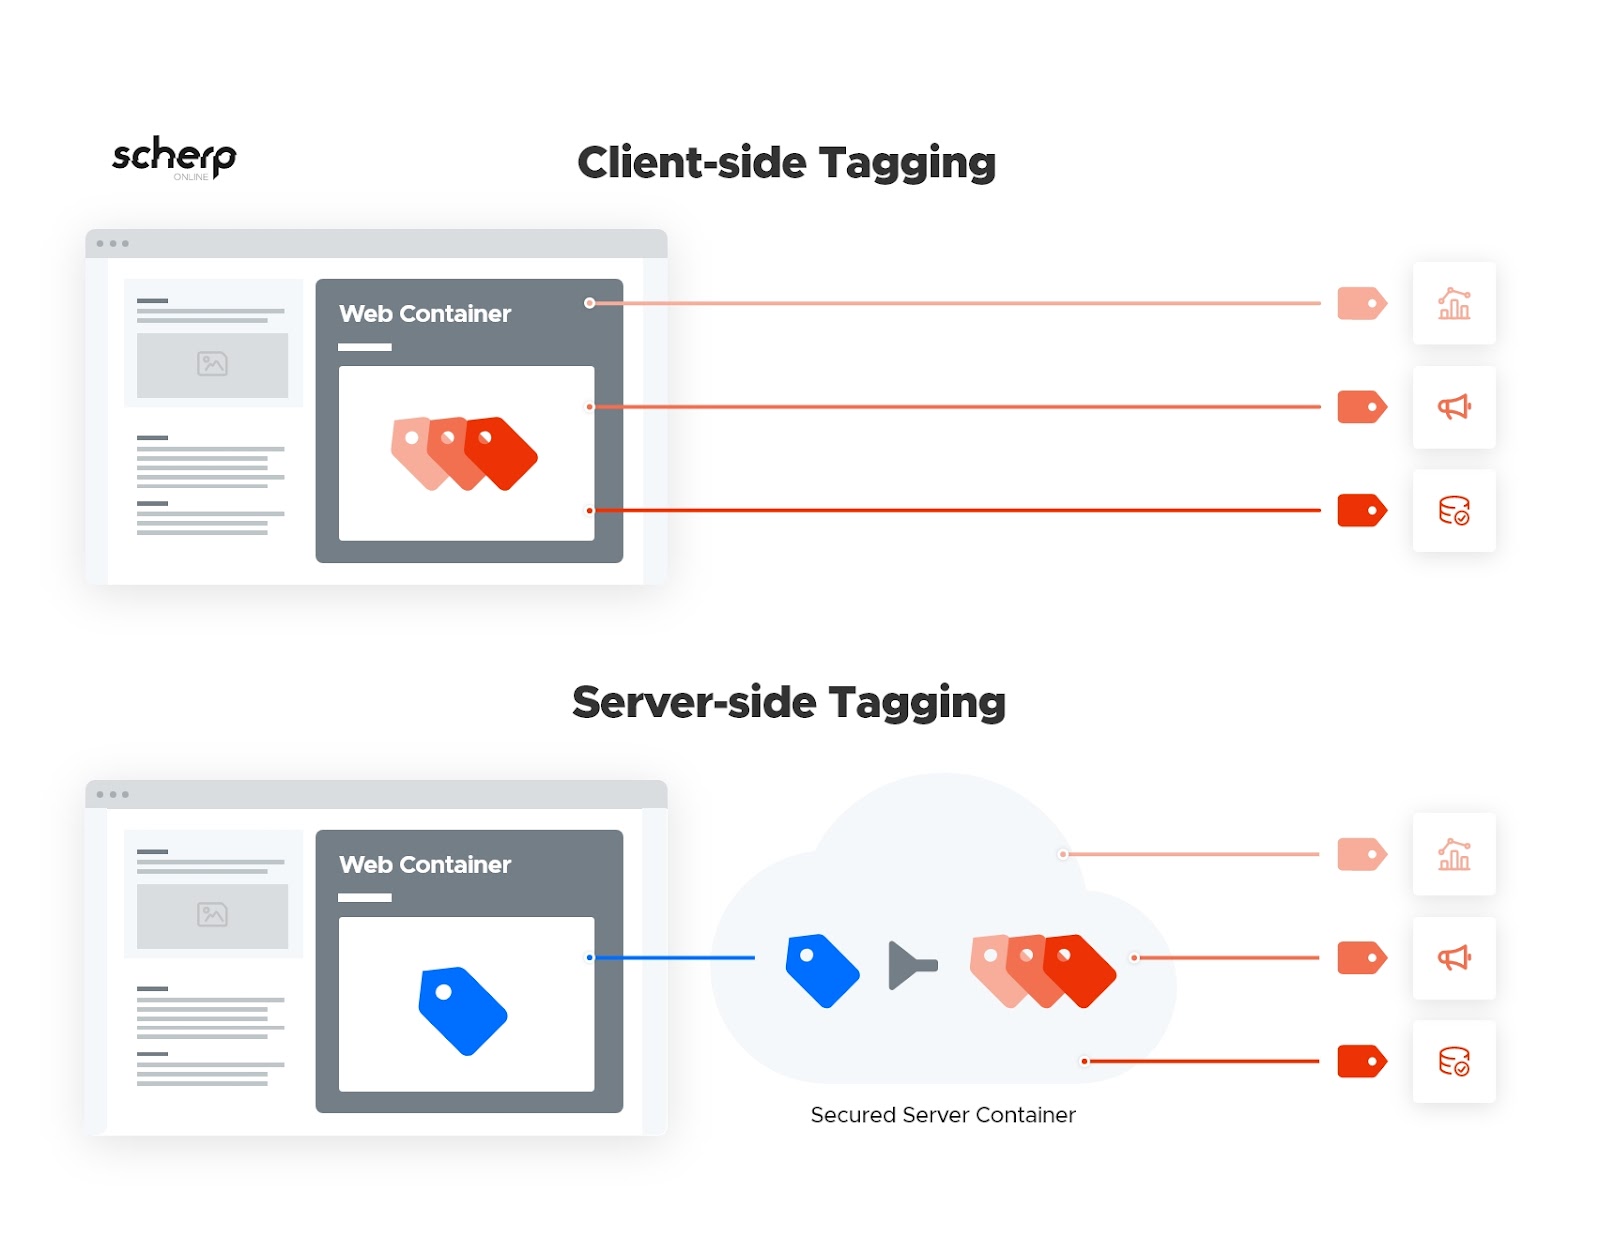 Verschil client-side tagging en server-side tagging